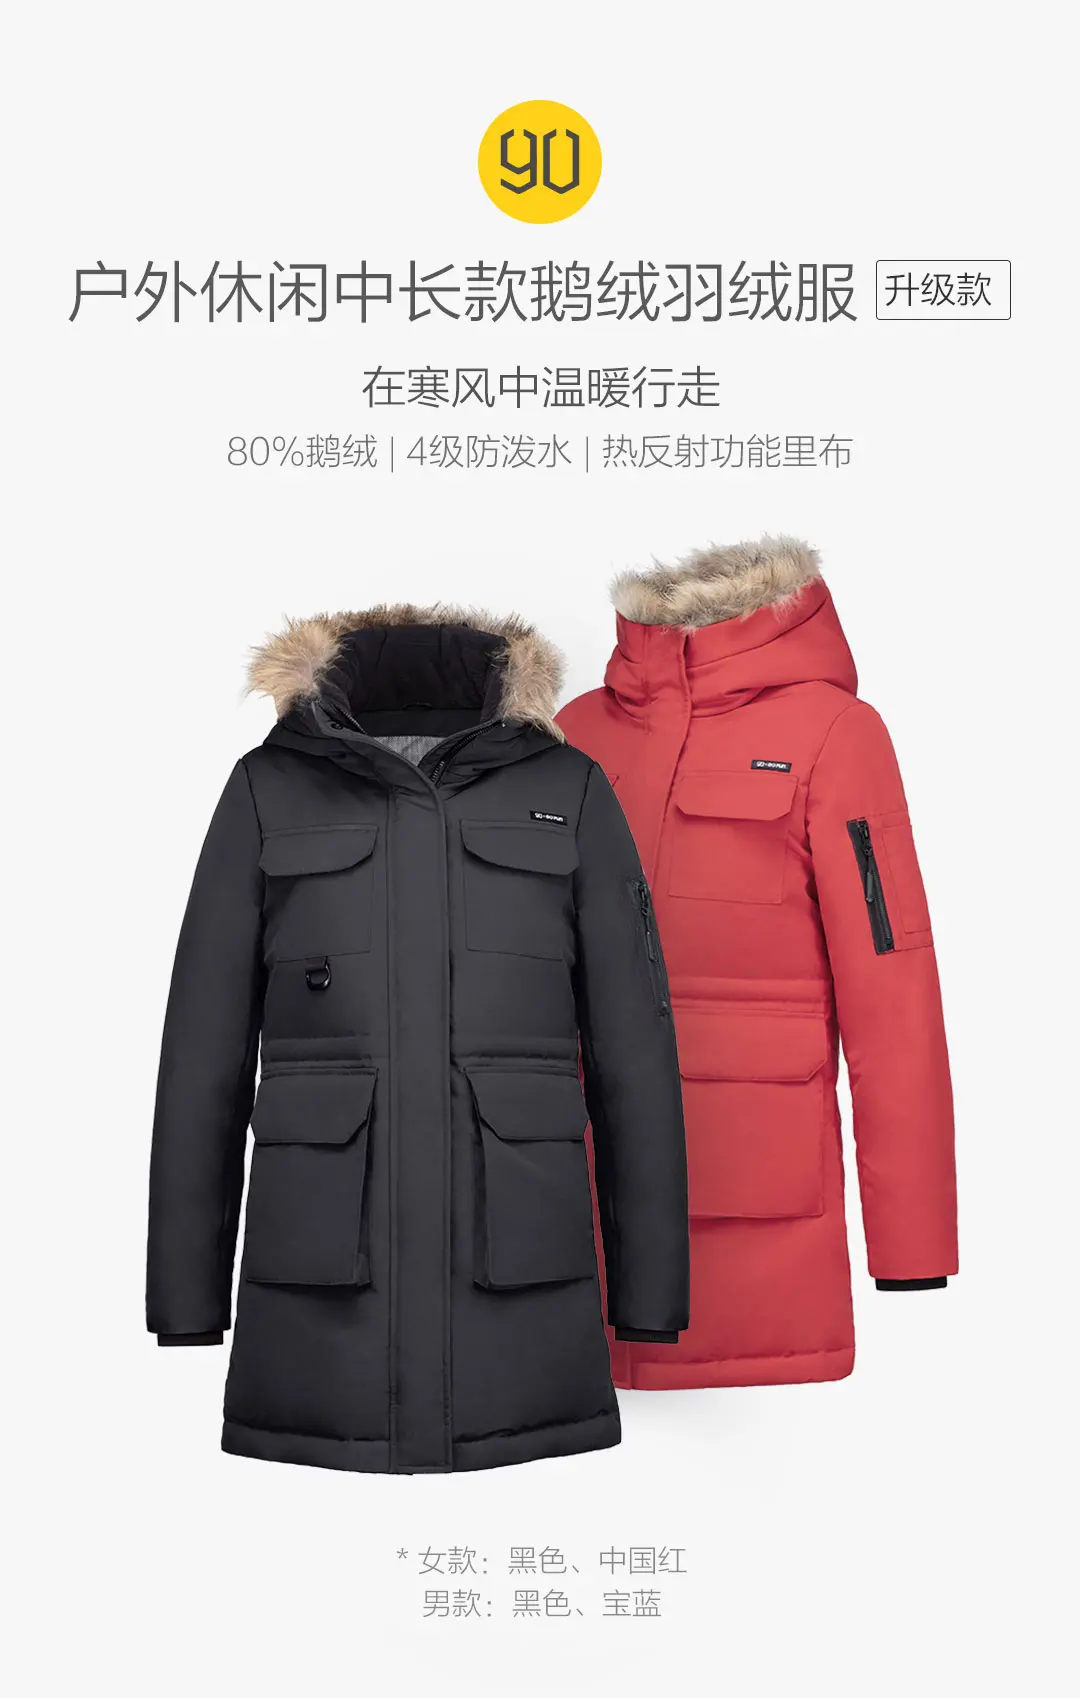 Новинка, Xiaomi Youpin, зимний пуховик, для улицы, для отдыха, длинный пуховик, 80% гусиное пальто, Ip4, водонепроницаемая зимняя куртка, пуховик